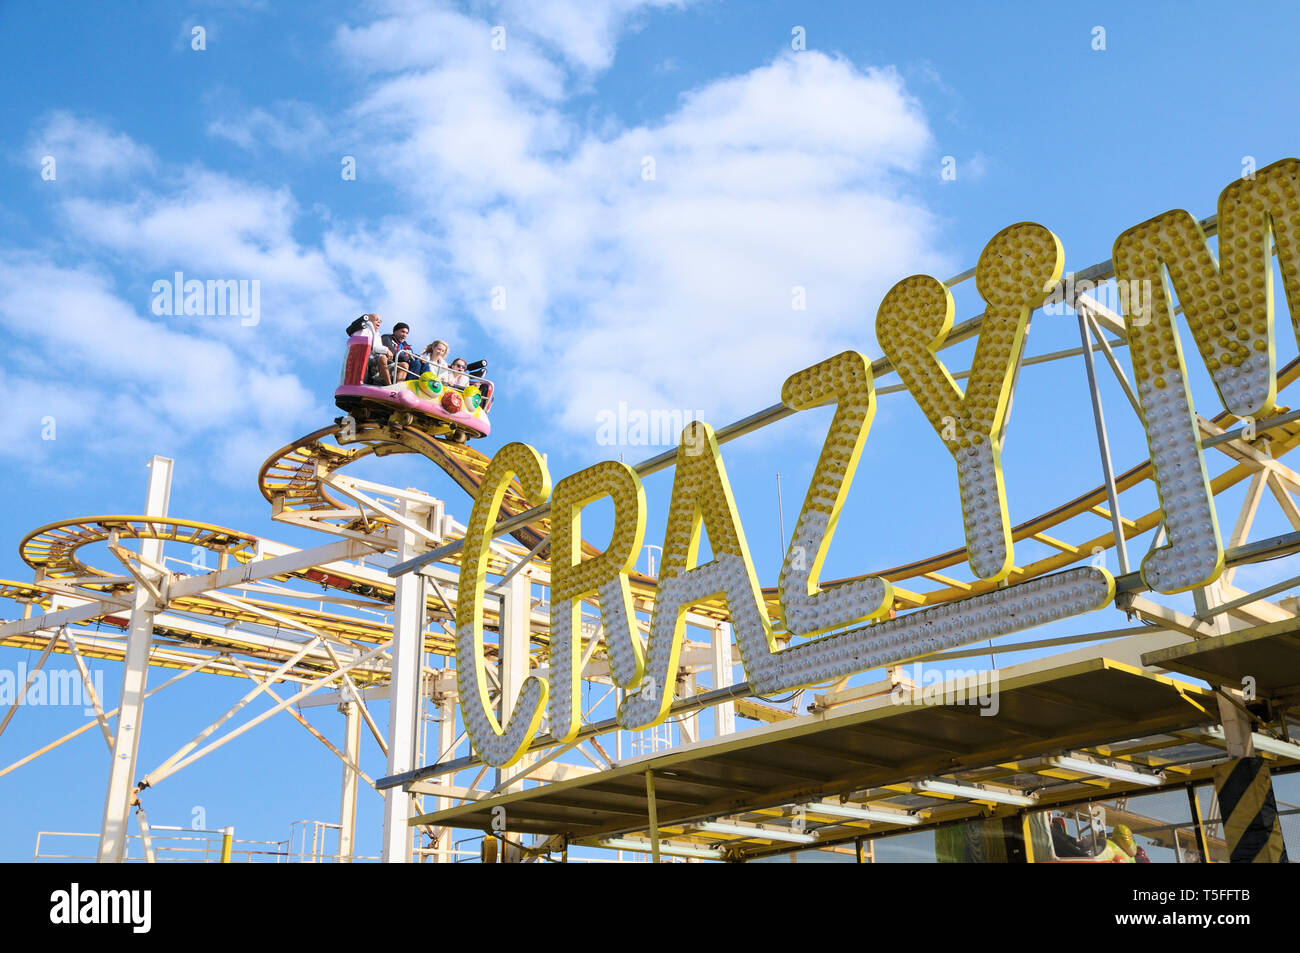 Le persone che si godono il Crazy Mouse rollercoaster fairground ride al parco di divertimenti di Brighton, Brighton Palace Pier, East Sussex, England, Regno Unito Foto Stock